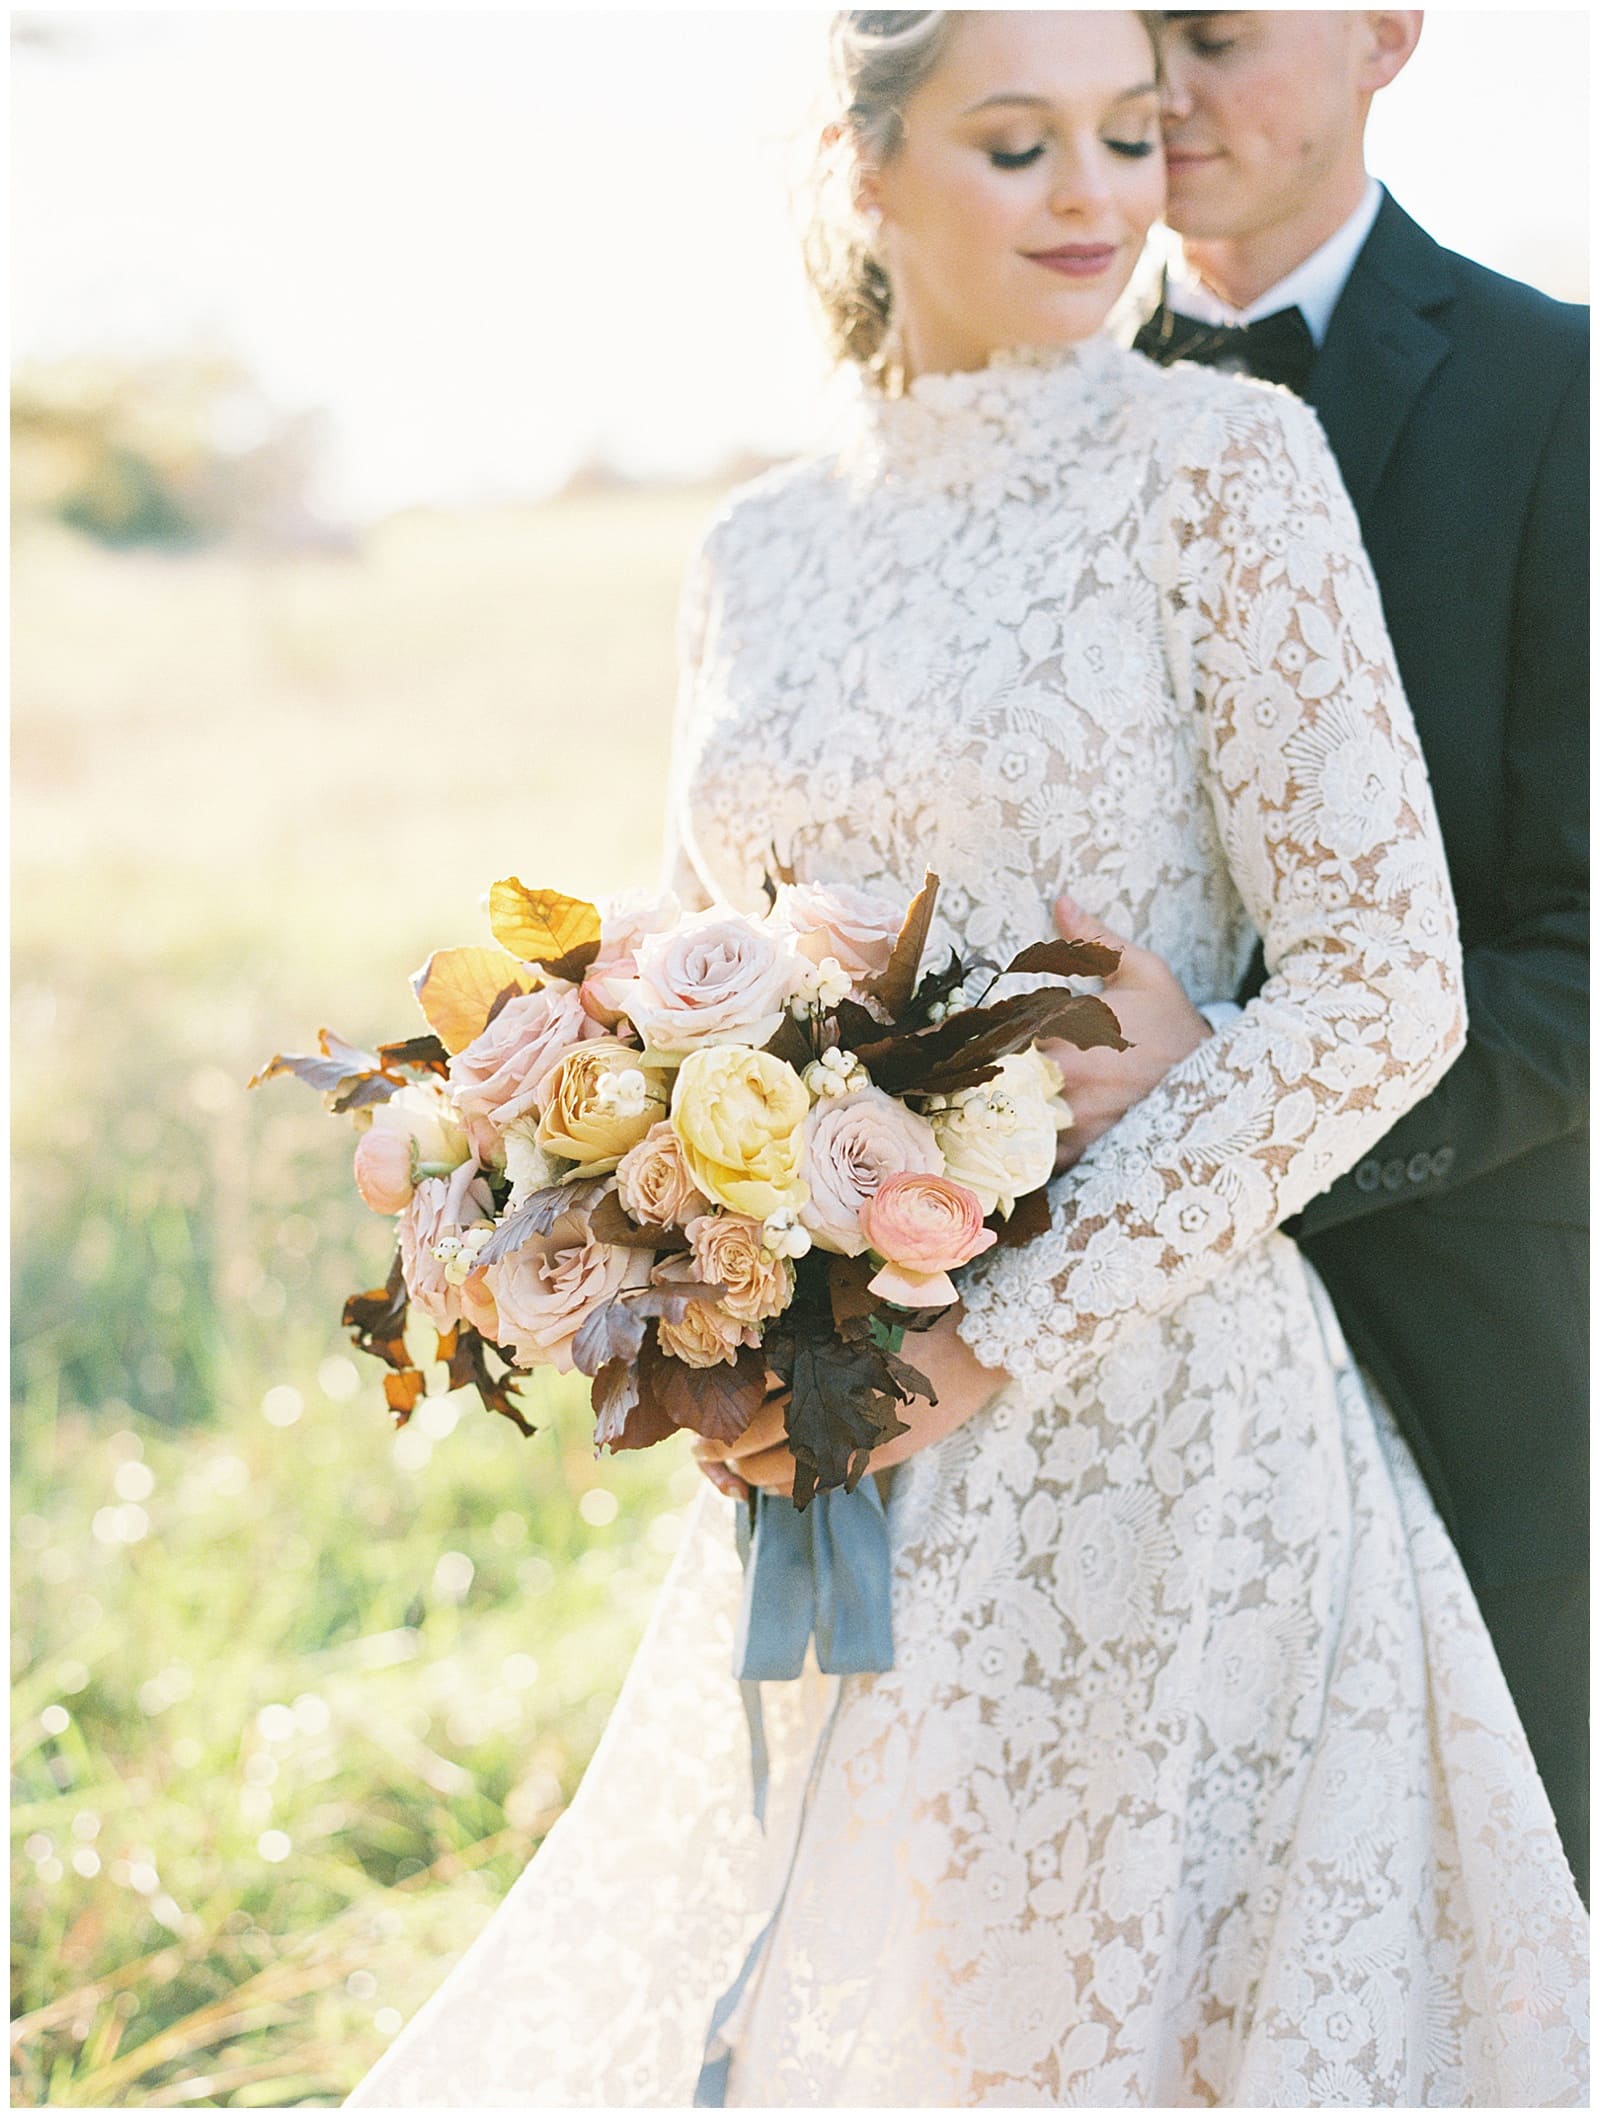 Danielle-Defayette-Photography-Bluebird-Meadows-Farm-Wedding_0003.jpg